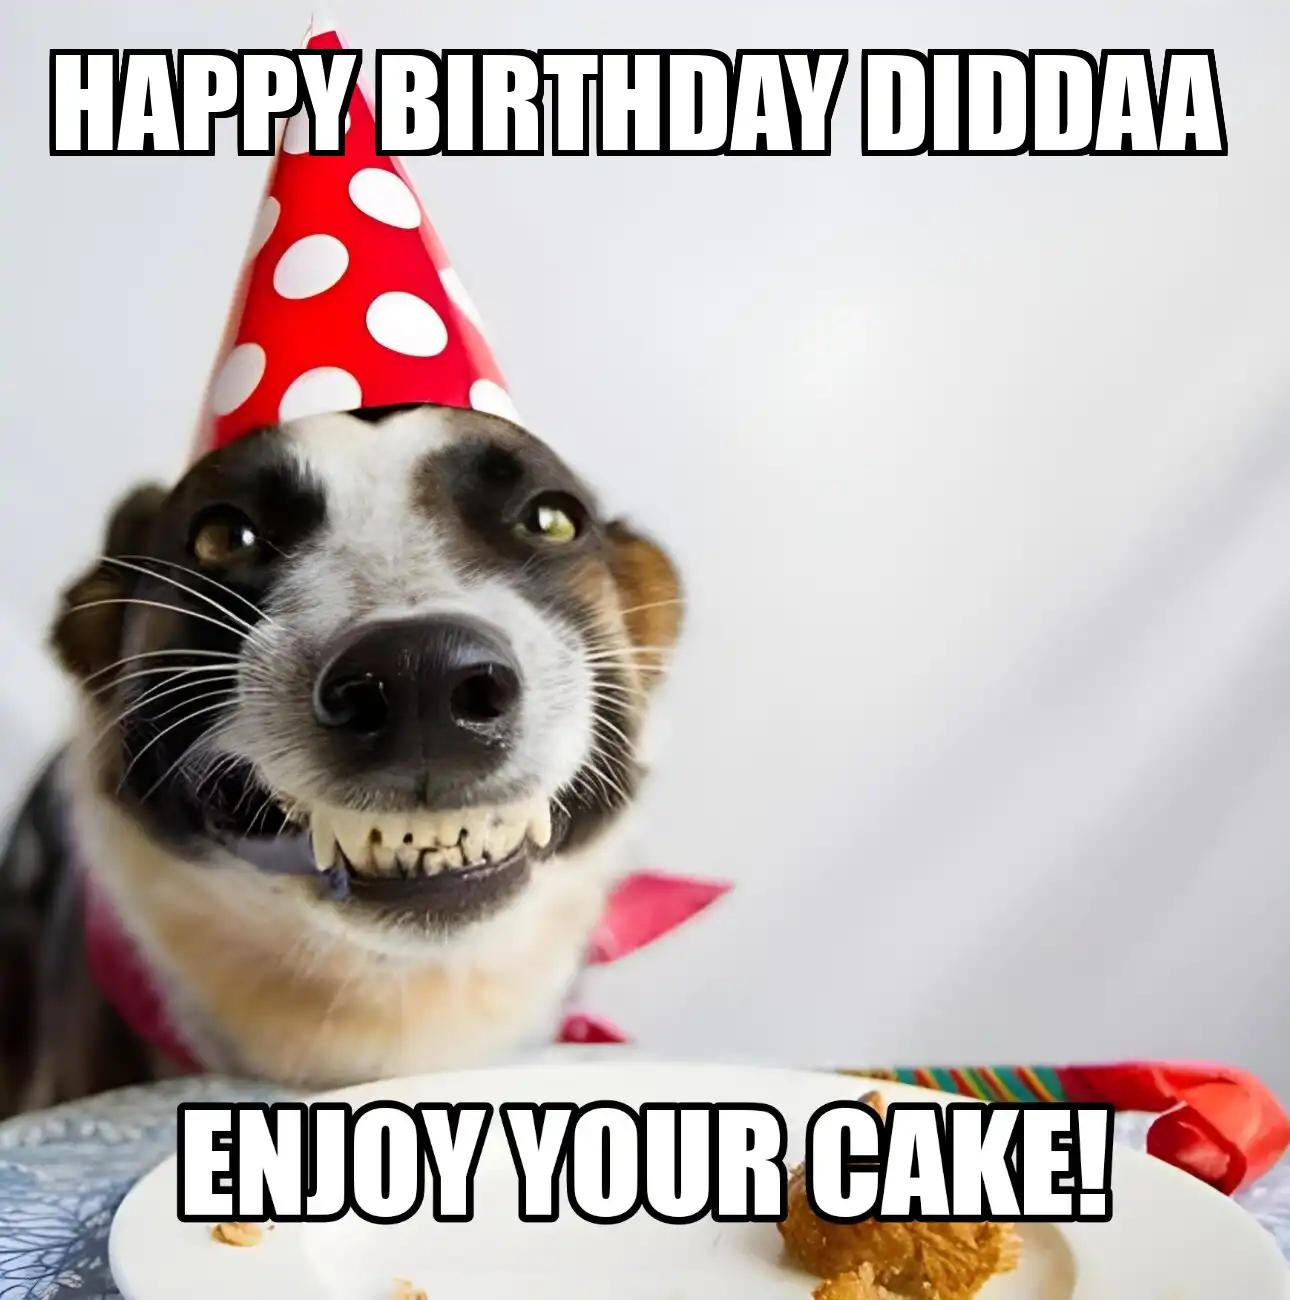 Happy Birthday Diddaa Enjoy Your Cake Dog Meme